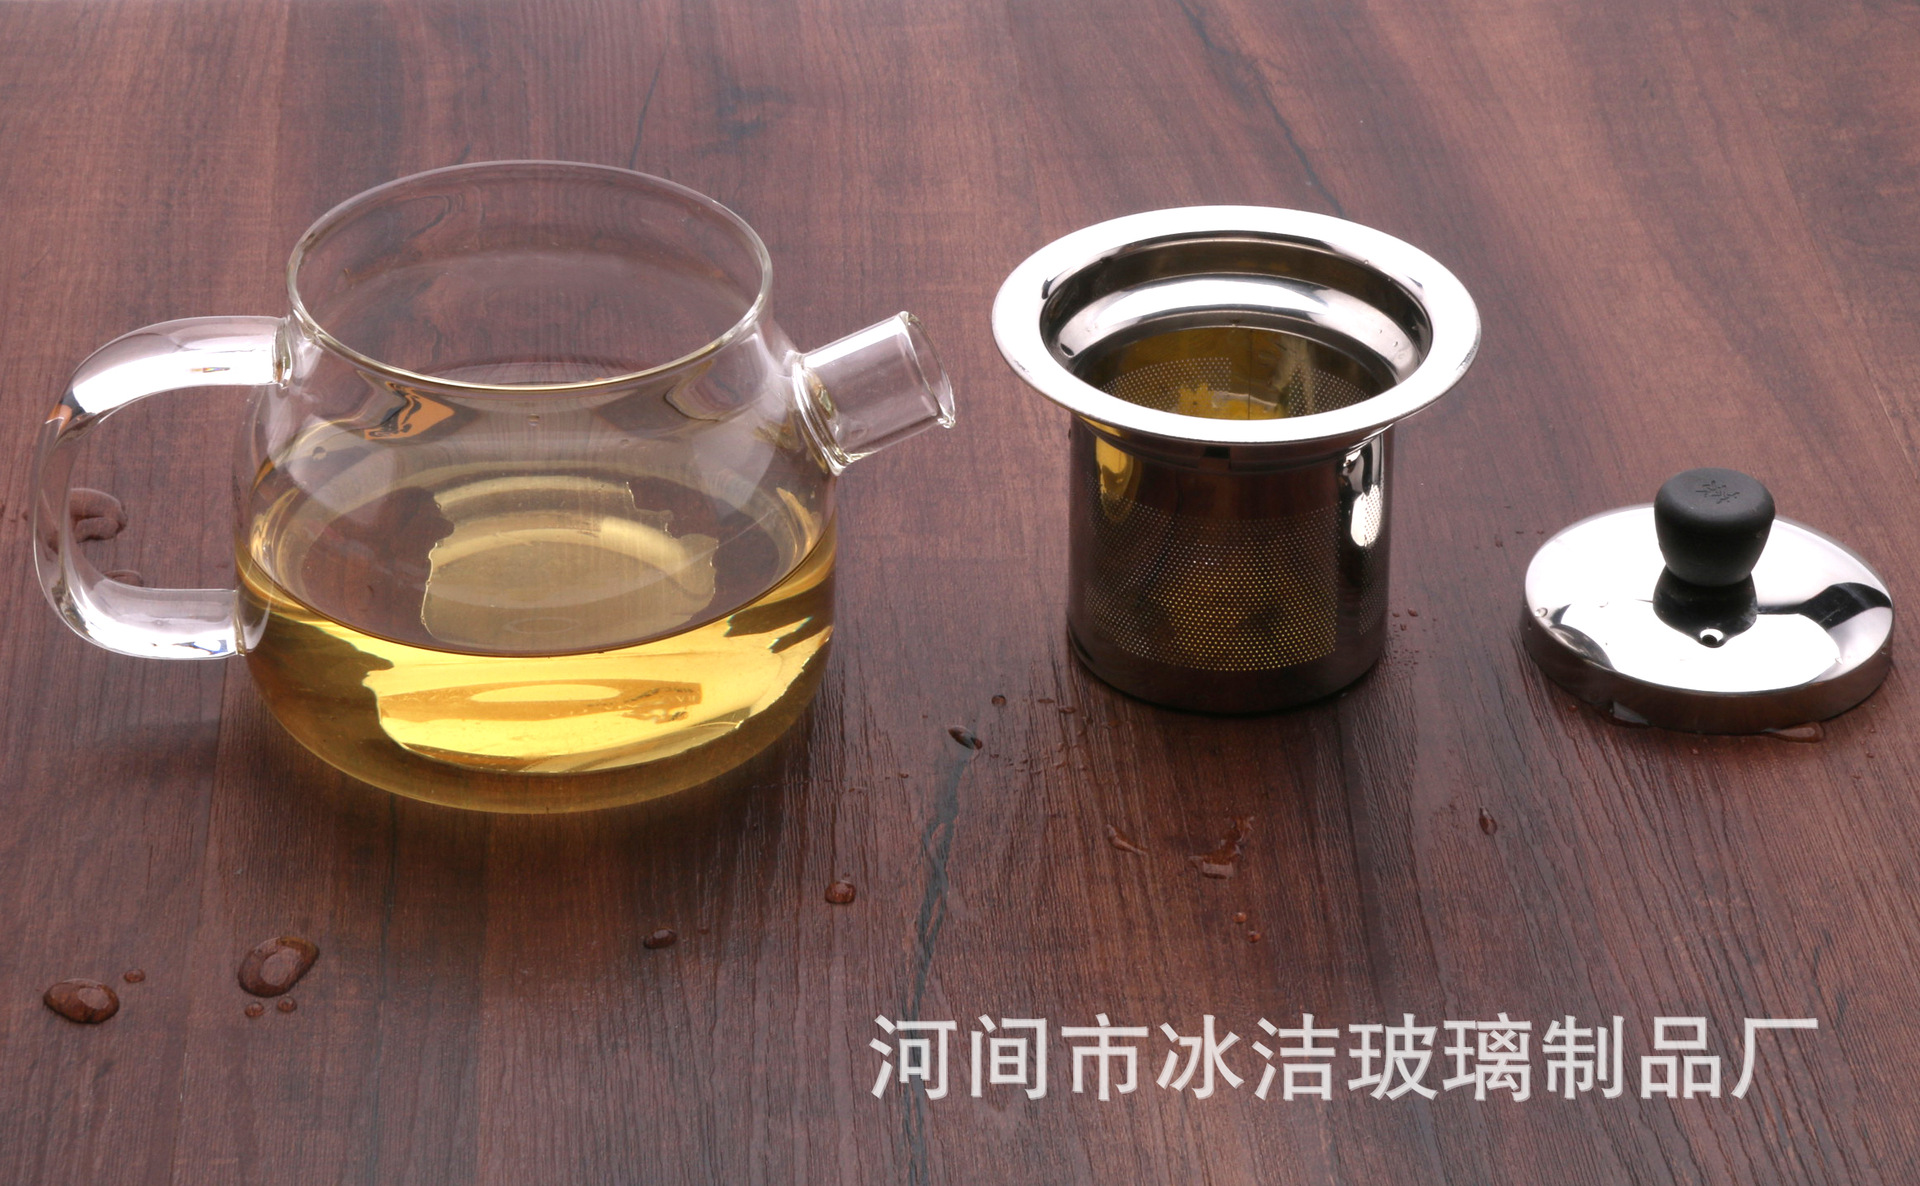 耐高温玻璃茶壶北欧风格短嘴茶壶 功夫茶具小壶可加热煮水茶壶示例图10